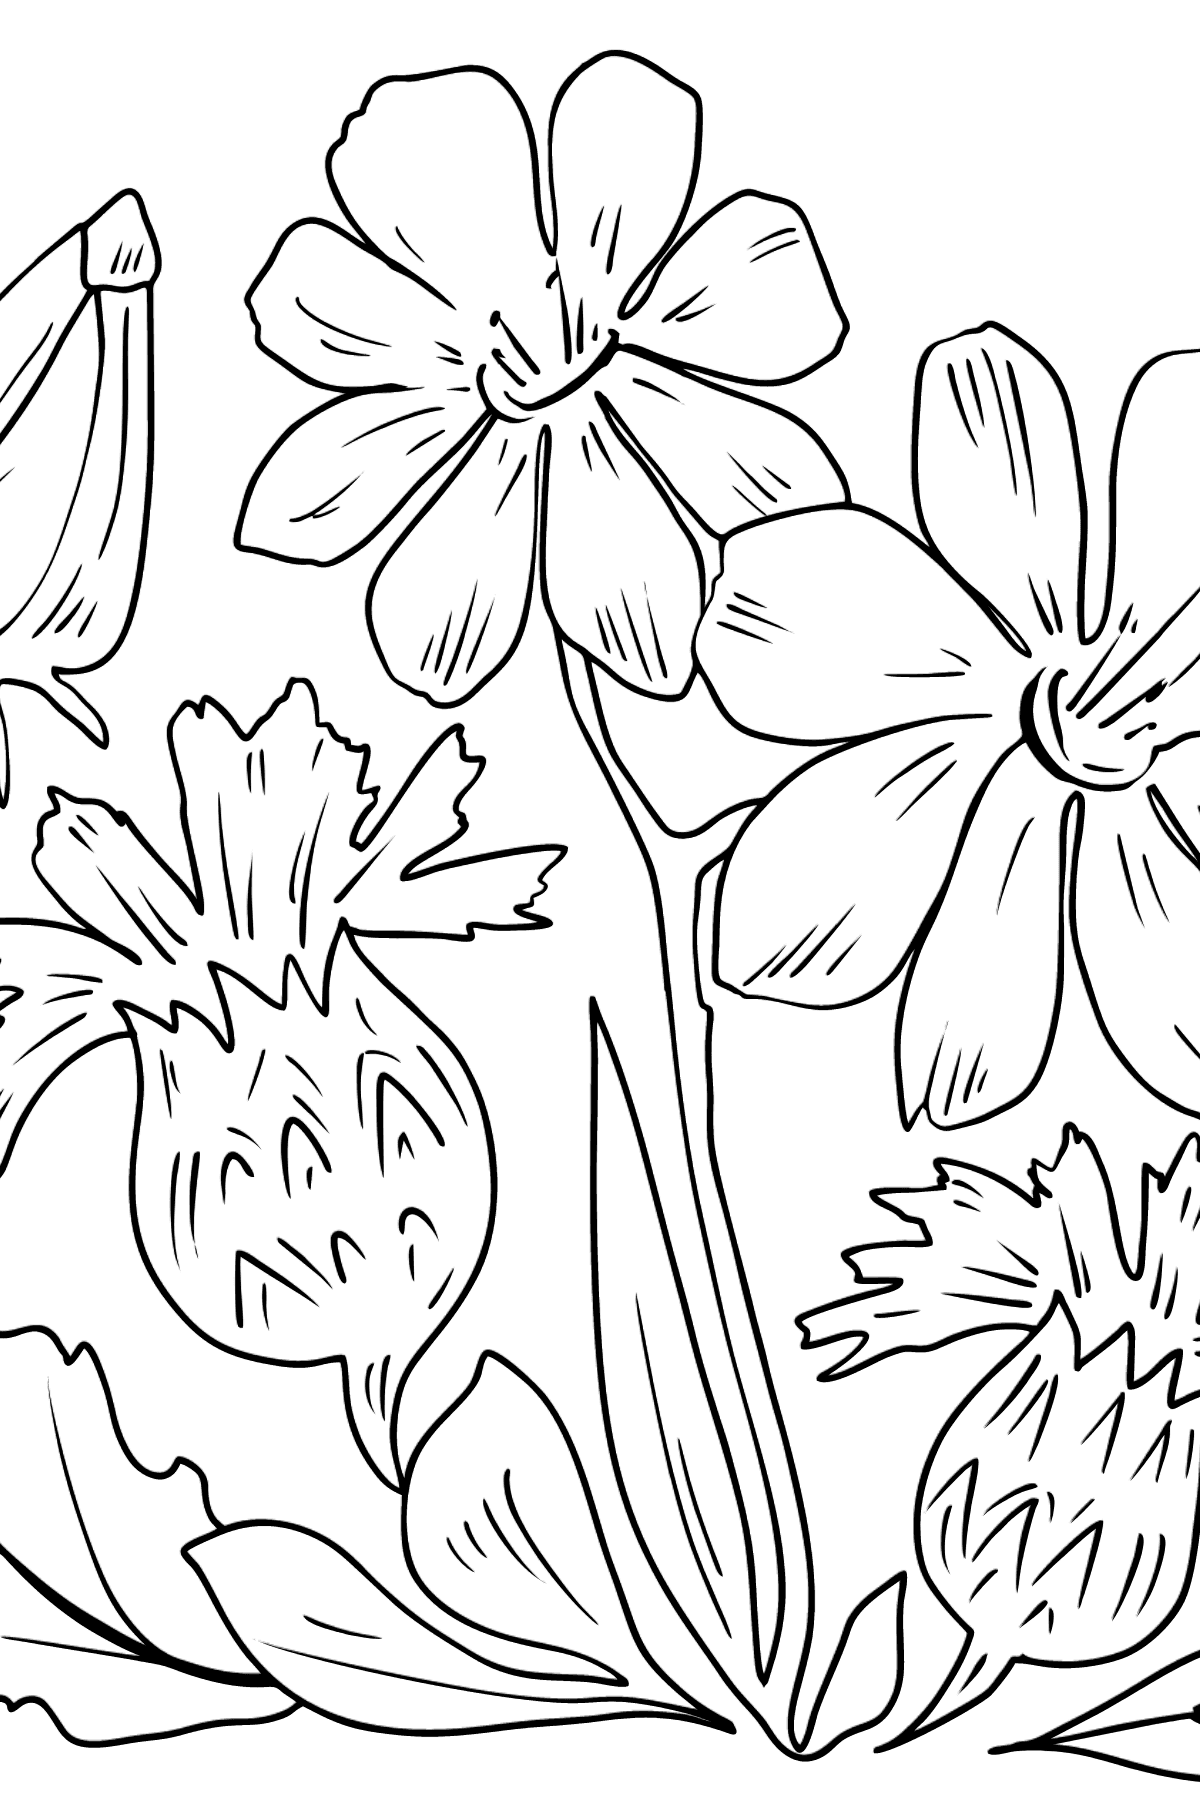 Dibujo para colorear de flores - flores en el prado - Dibujos para Colorear para Niños